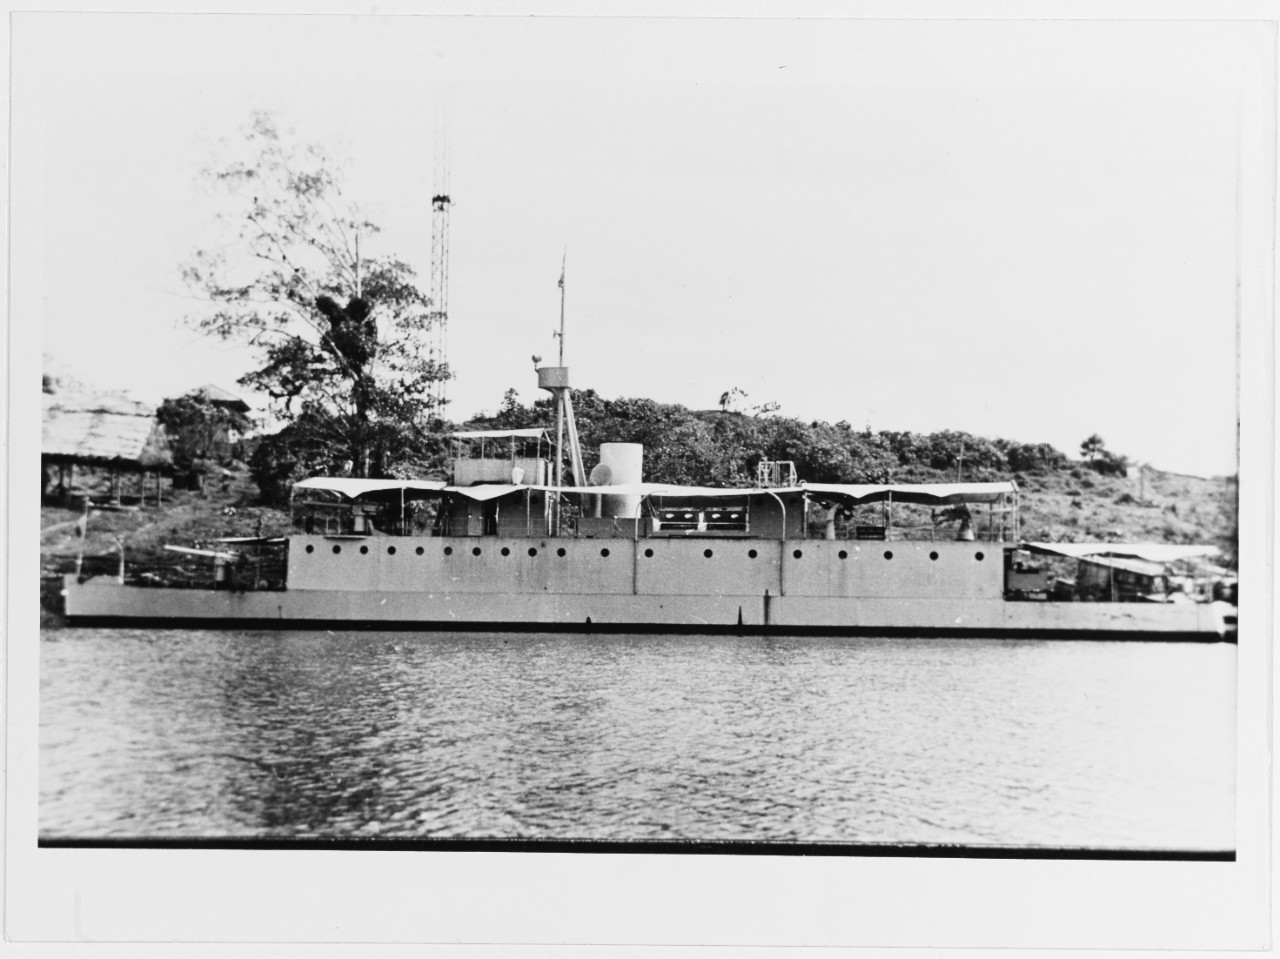 LORETO (Peruvian River Gunboat, 1934)